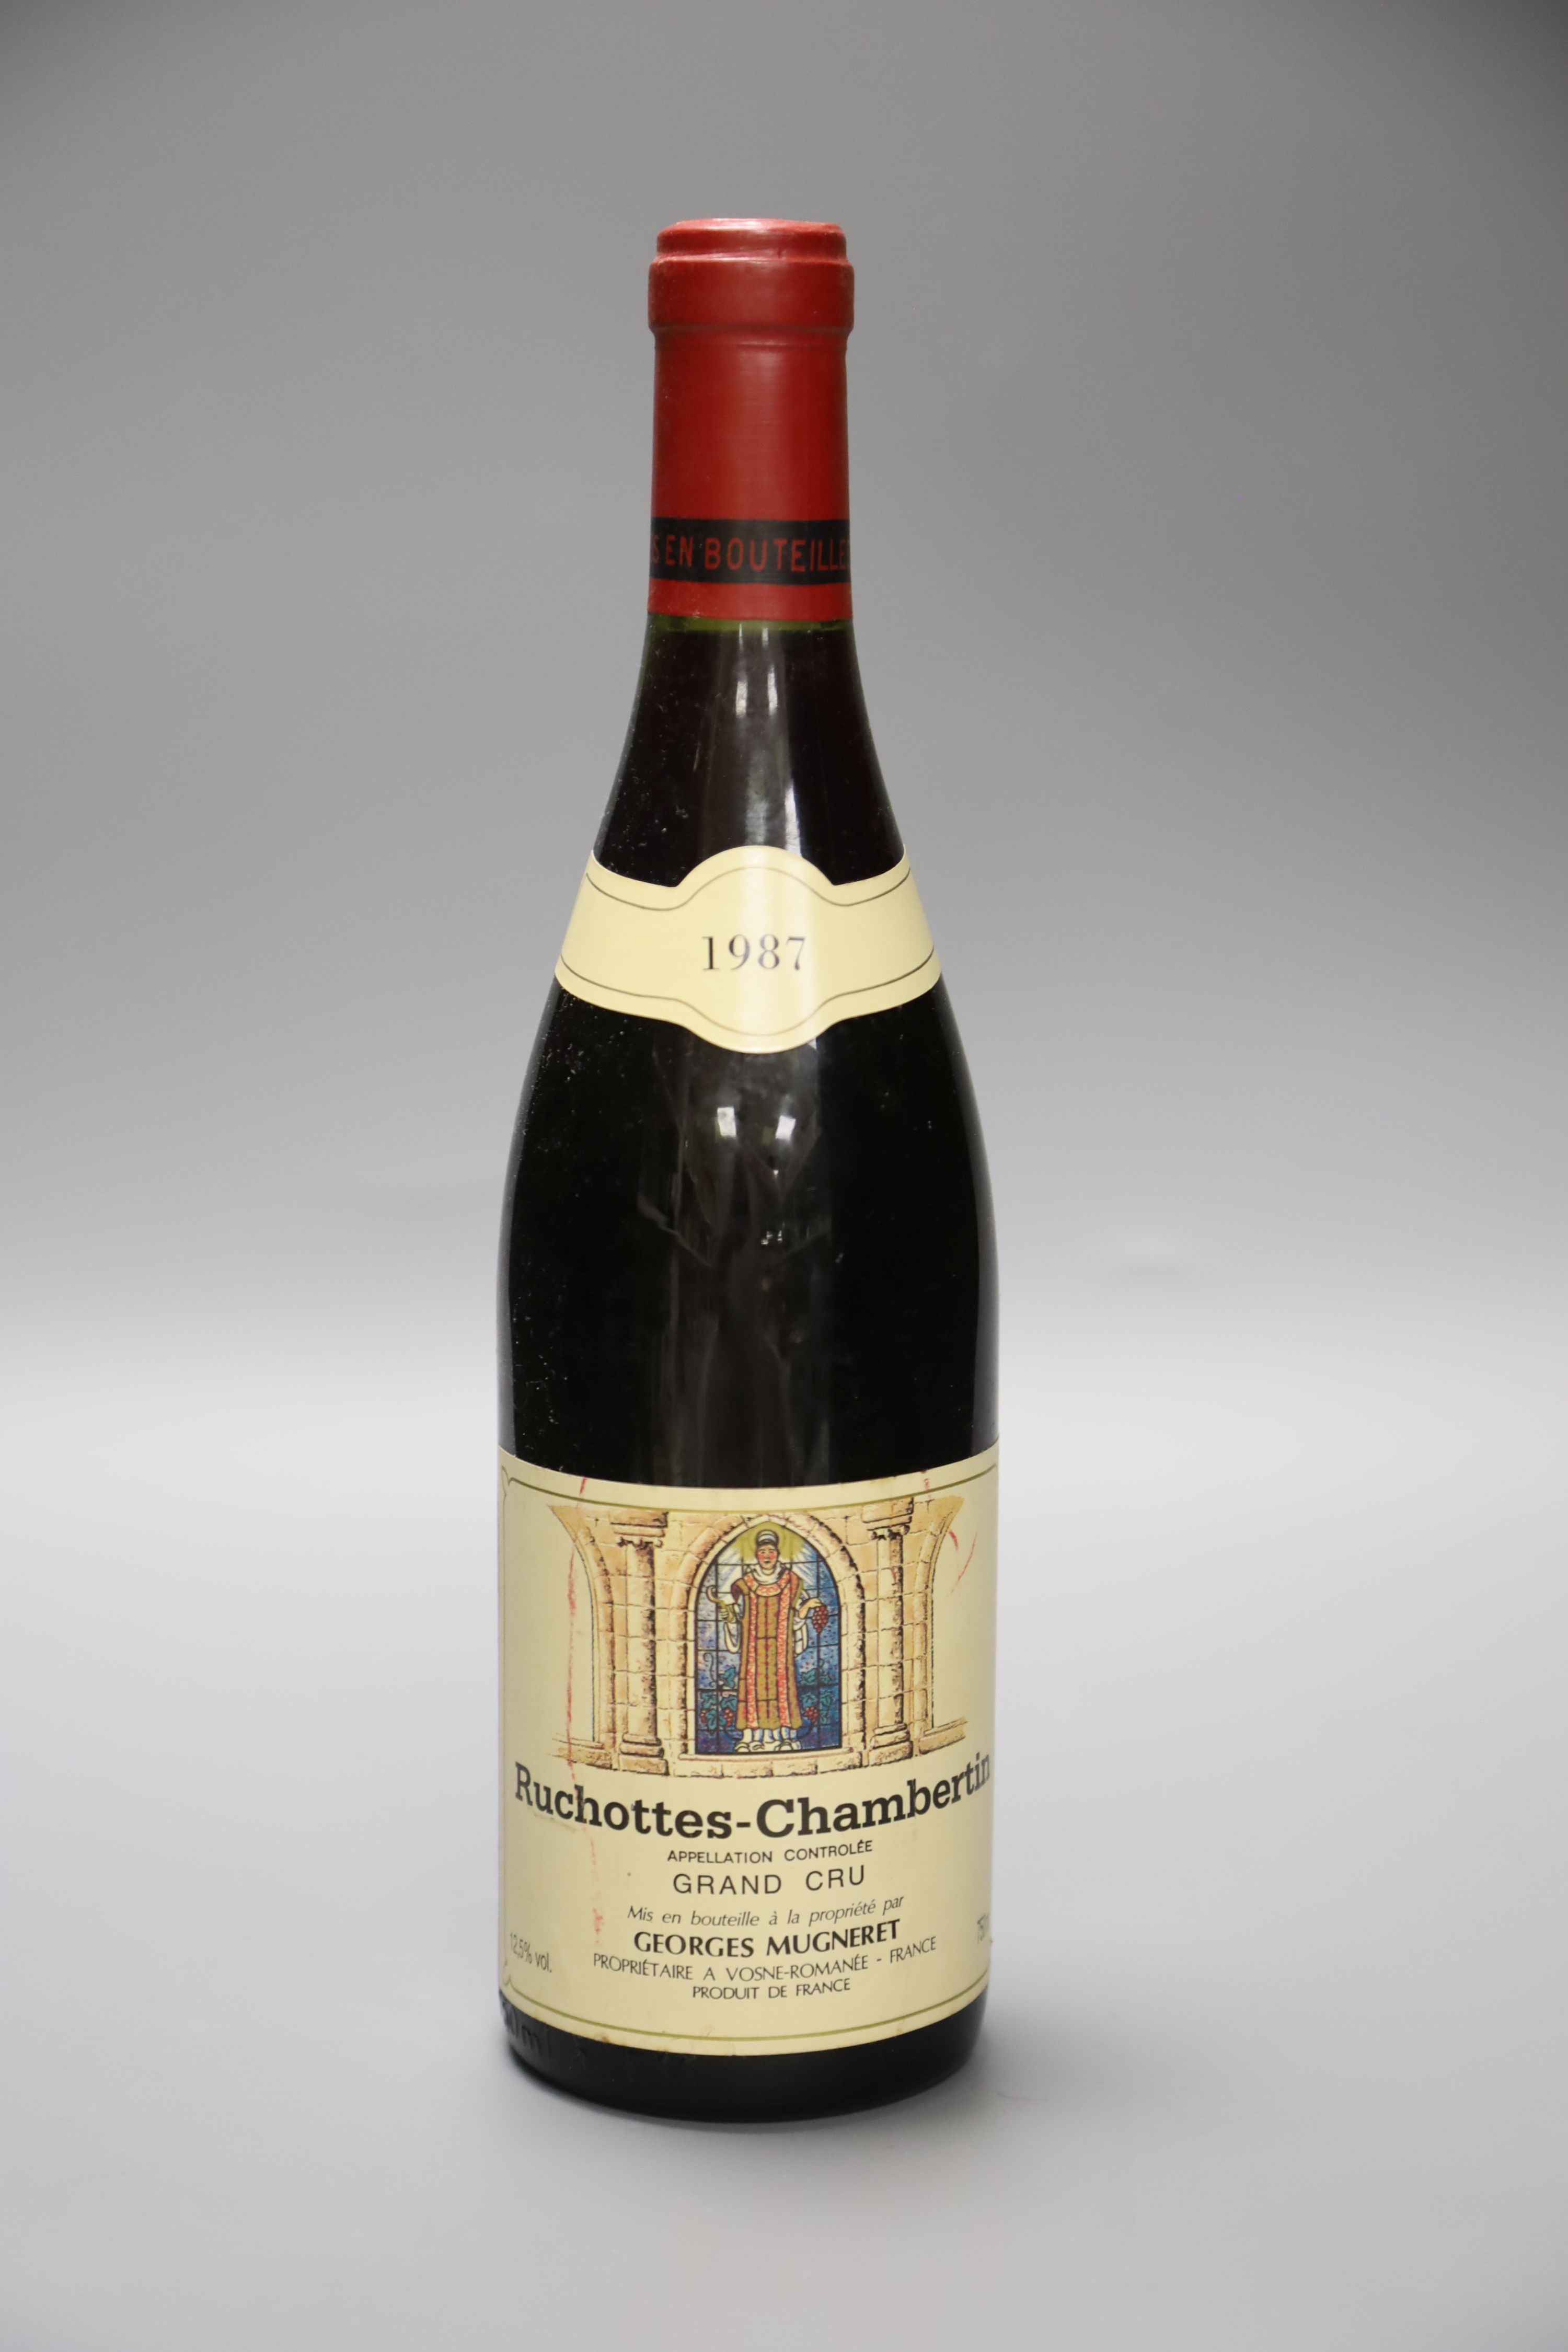 One bottle of Ruchottes-Chambertin, 1987, (Georges Mugneret).